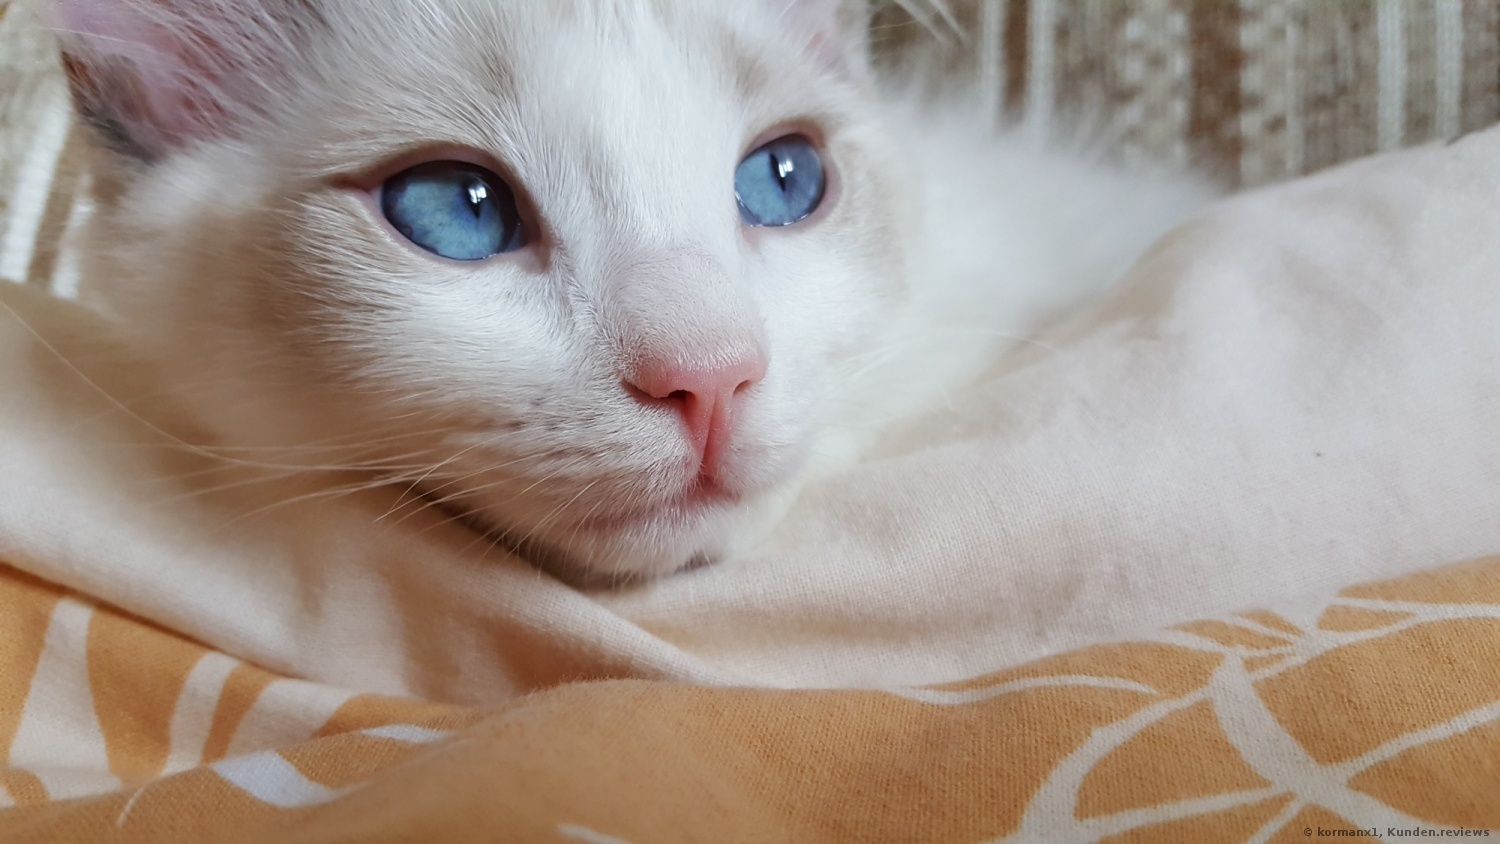 Blaue Augen